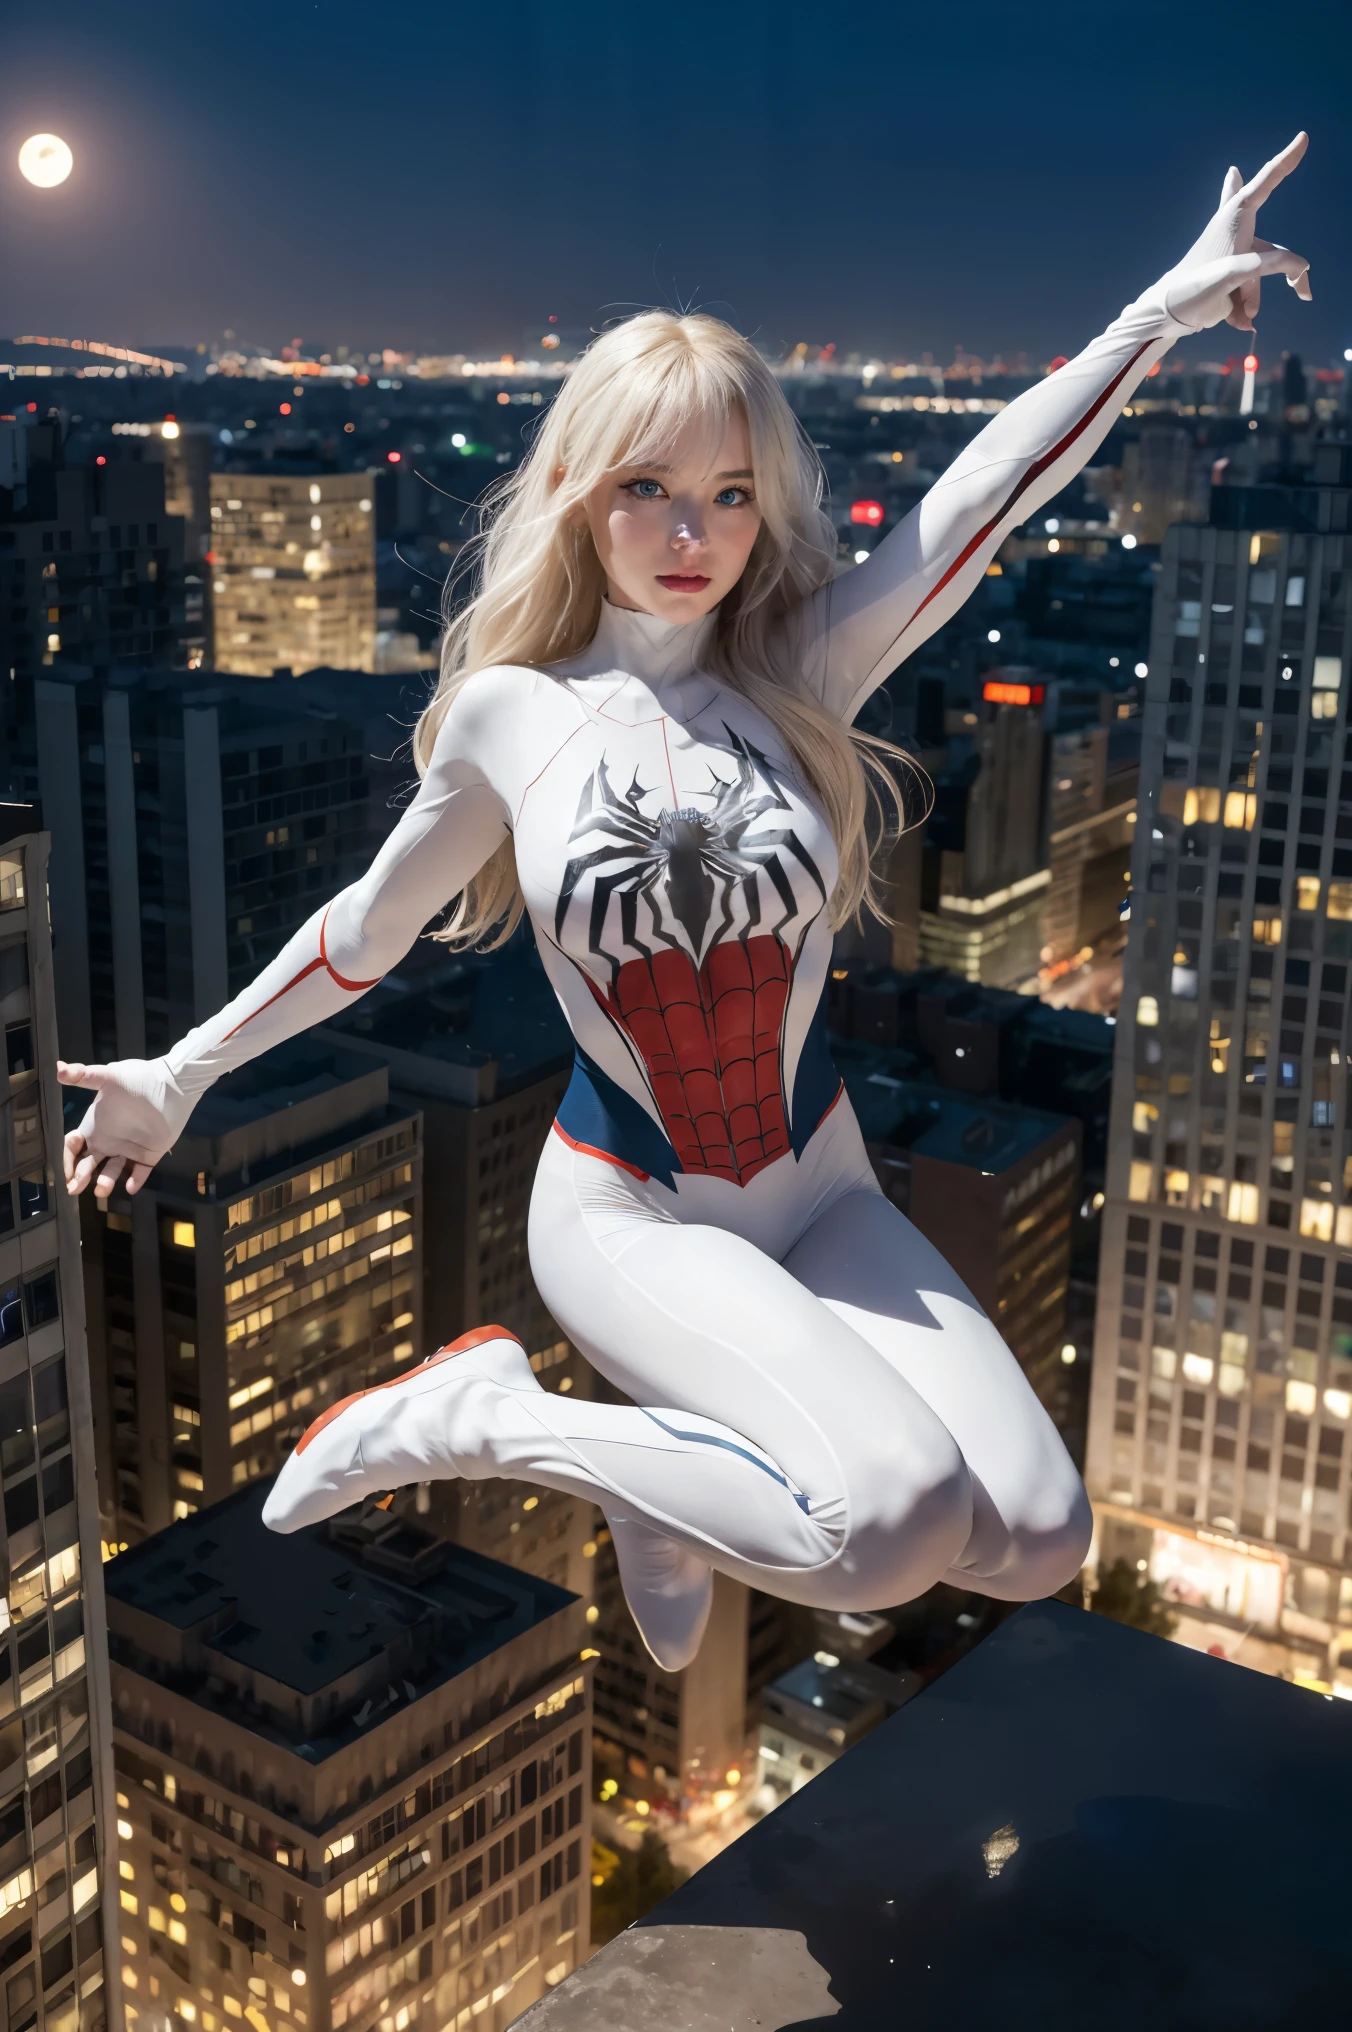 (obra maestra, resolución 4k, Ultrarrealista, Muy detallado), (Tema de superhéroe blanco, carismático, hay una chica en la cima de la ciudad, vistiendo disfraz de Spider-Man, ella es una superheroína), [ ((25 años), (pelo largo y blanco:1.2), cuerpo completo, (blue eyes:1.2), ((Postura del hombre araña),demostración de fuerza, saltando de un edificio a otro), ((entorno urbano arenoso):0.8)| (paisaje urbano, por la noche, luces dinámicas), (Luna llena))] # Explicación: El mensaje describe principalmente una pintura 4K de ultra alta definición., Muy realista, Muy detallado. Muestra una superheroína en lo alto de la ciudad., vistiendo un disfraz de Spider-Man. El tema de la pintura es un tema de superhéroe blanco., the female protagonist has pelo largo y blanco, is 25 años old and her entire body is shown in the painting. En términos de retratar las acciones de las superheroínas., se emplean arañas